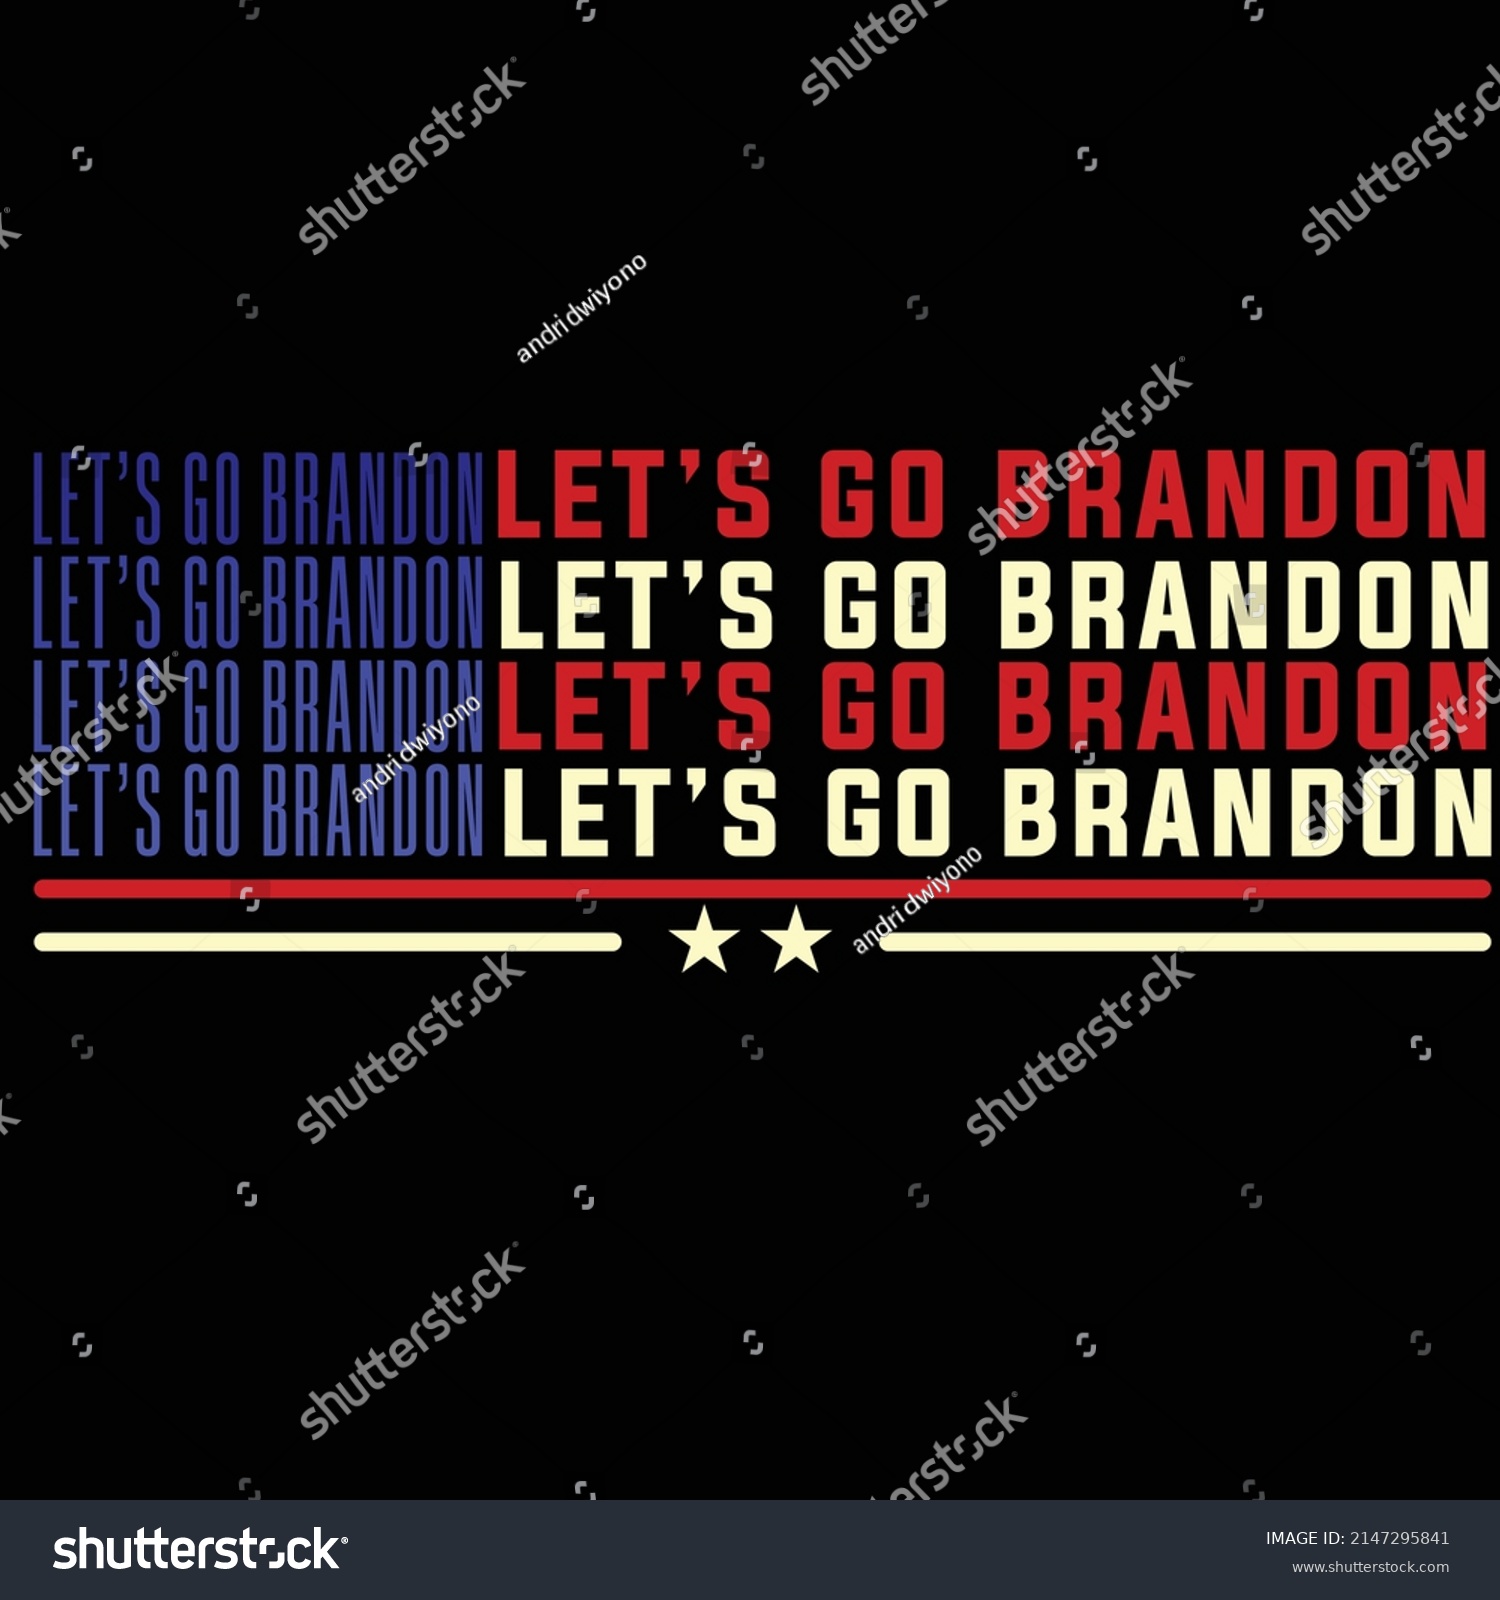 SVG of Let's Go Brandon Campaign , political slogan and Internet meme svg